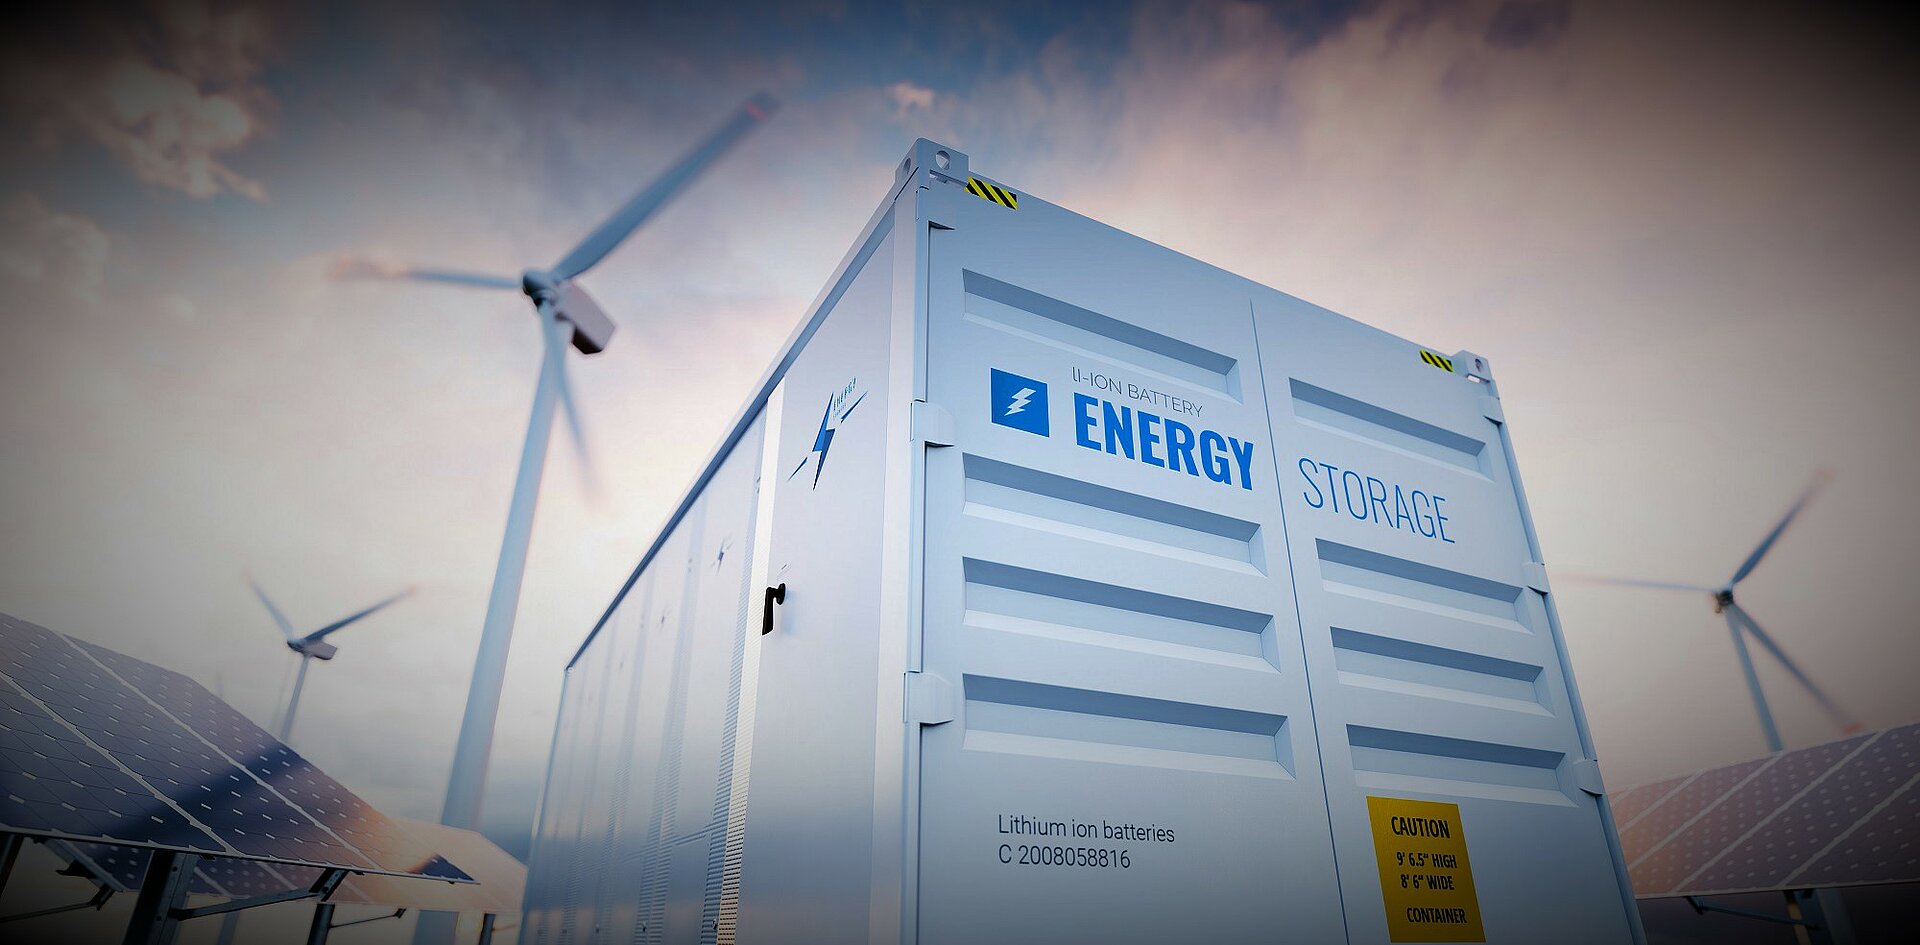 xxl energy storage